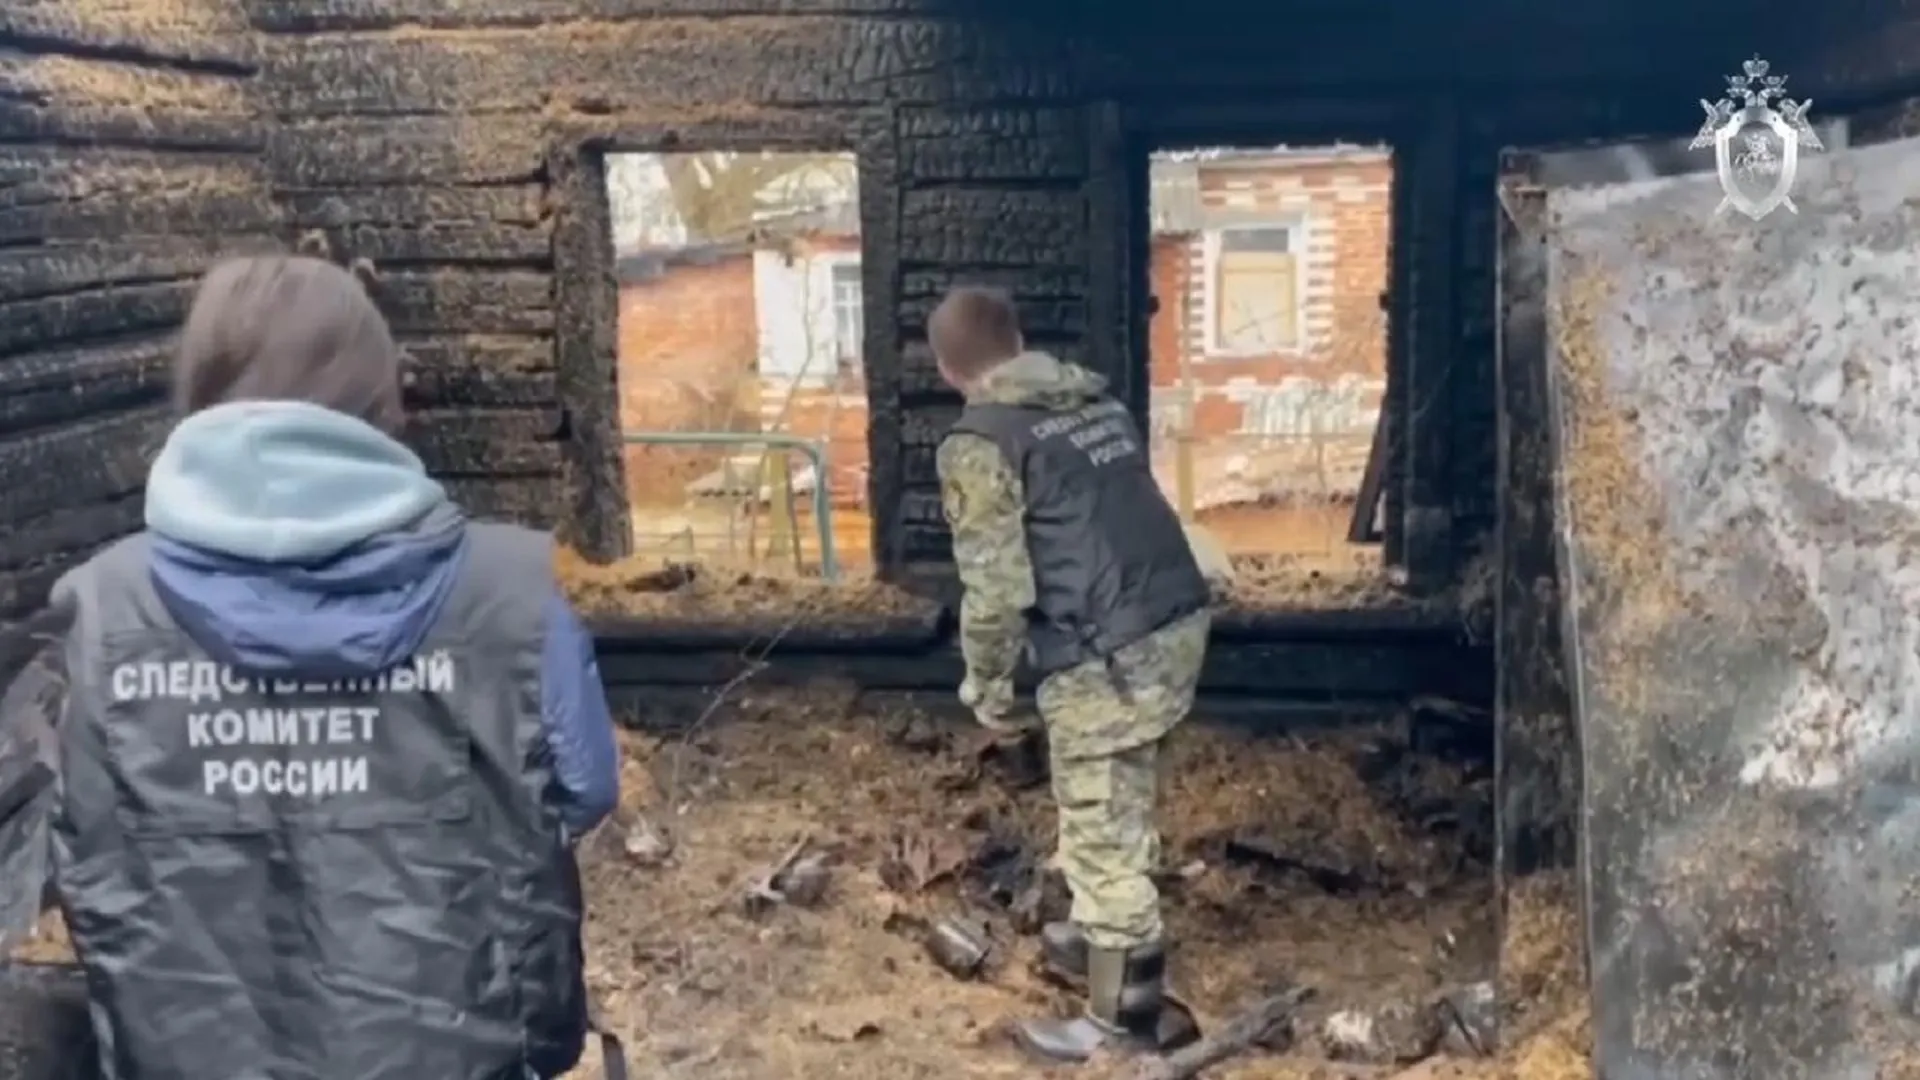 СК опубликовал видео с места пожара в Воскресенске, где погибли четверо детей и их родители